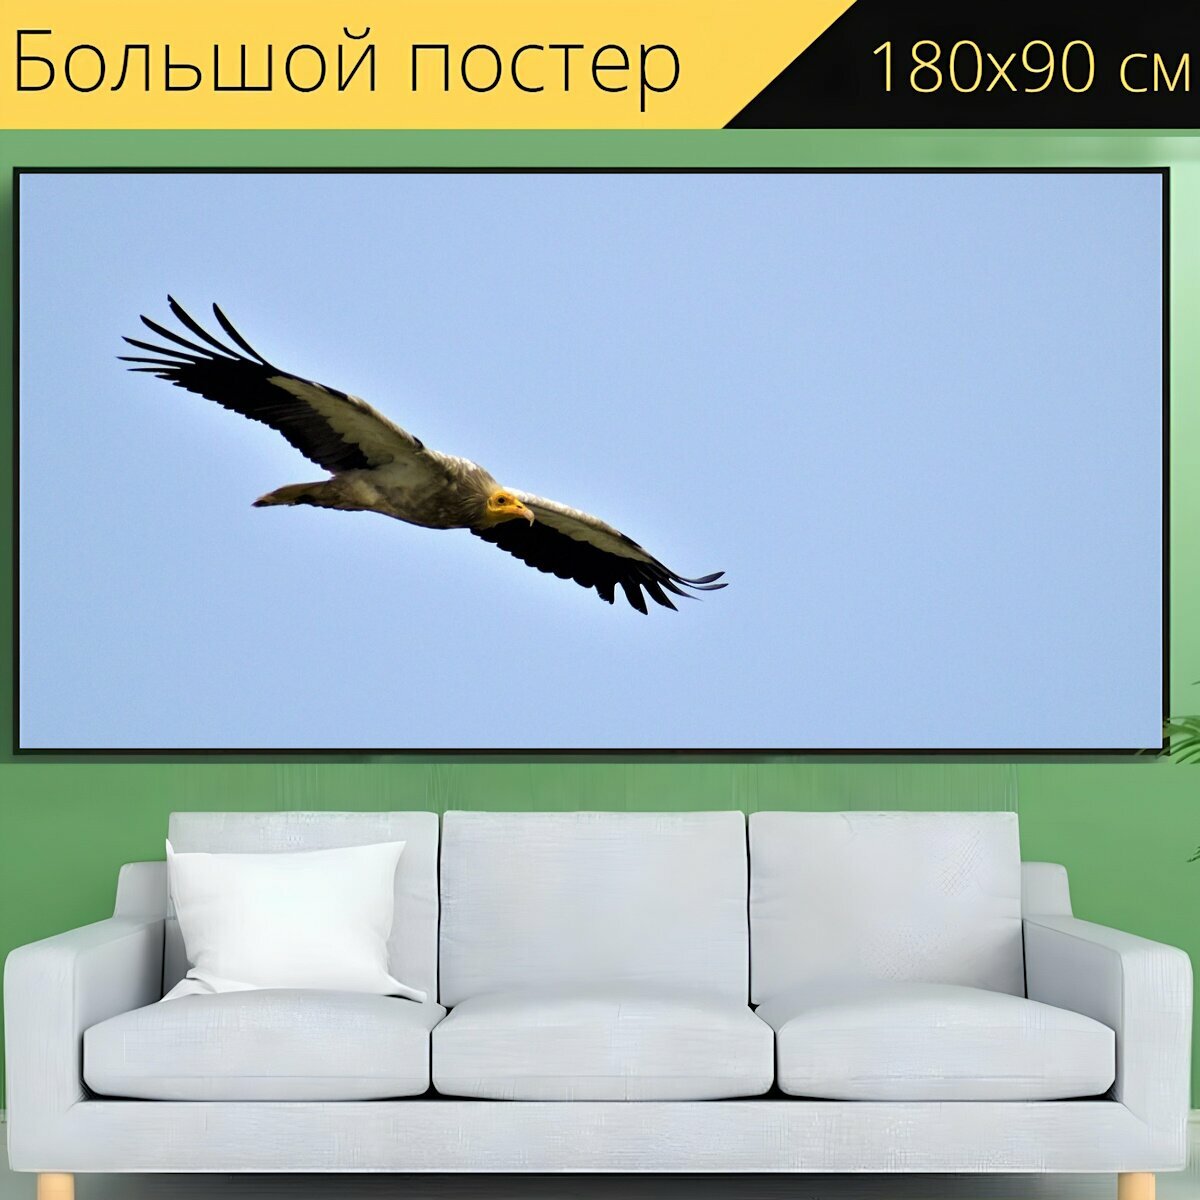 Большой постер "Стервятник, природа, птица" 180 x 90 см. для интерьера